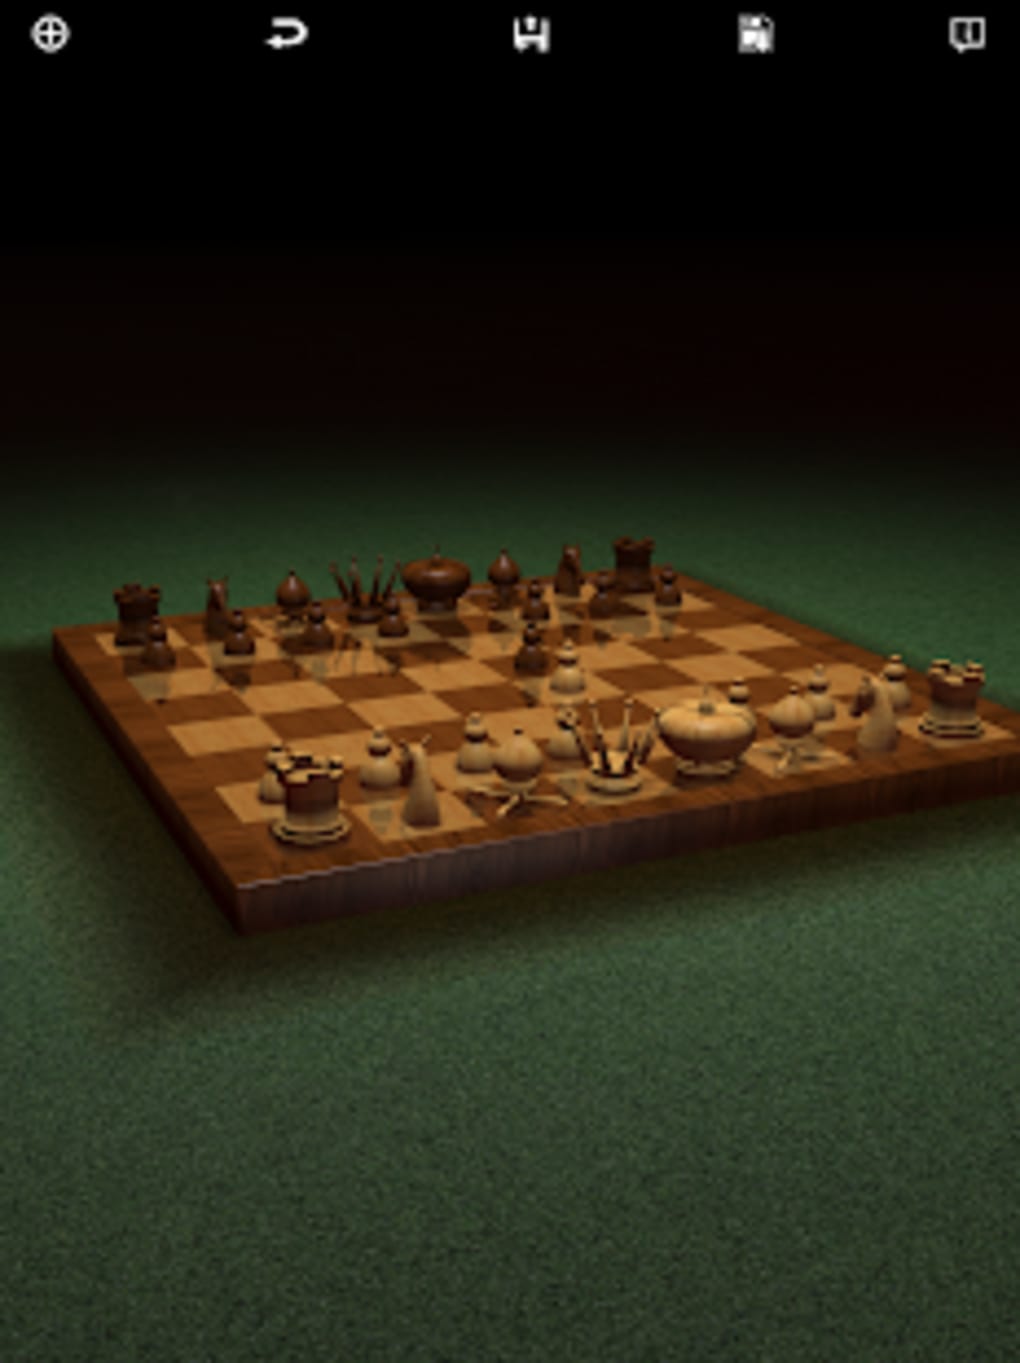 Download do APK de Battle Chess 3D para Android